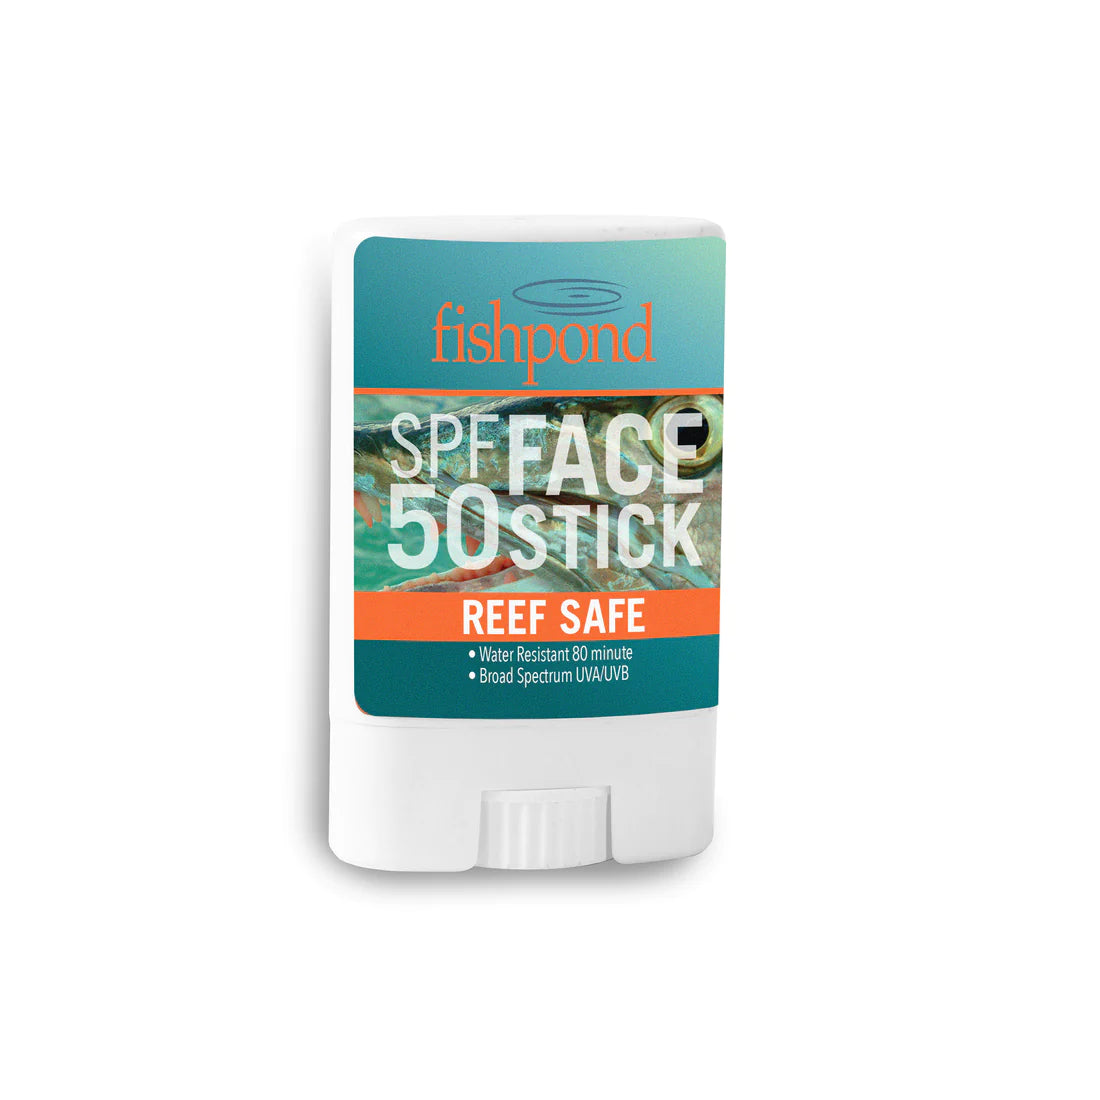 Fishpond reef safe Face Stick-SPF 50